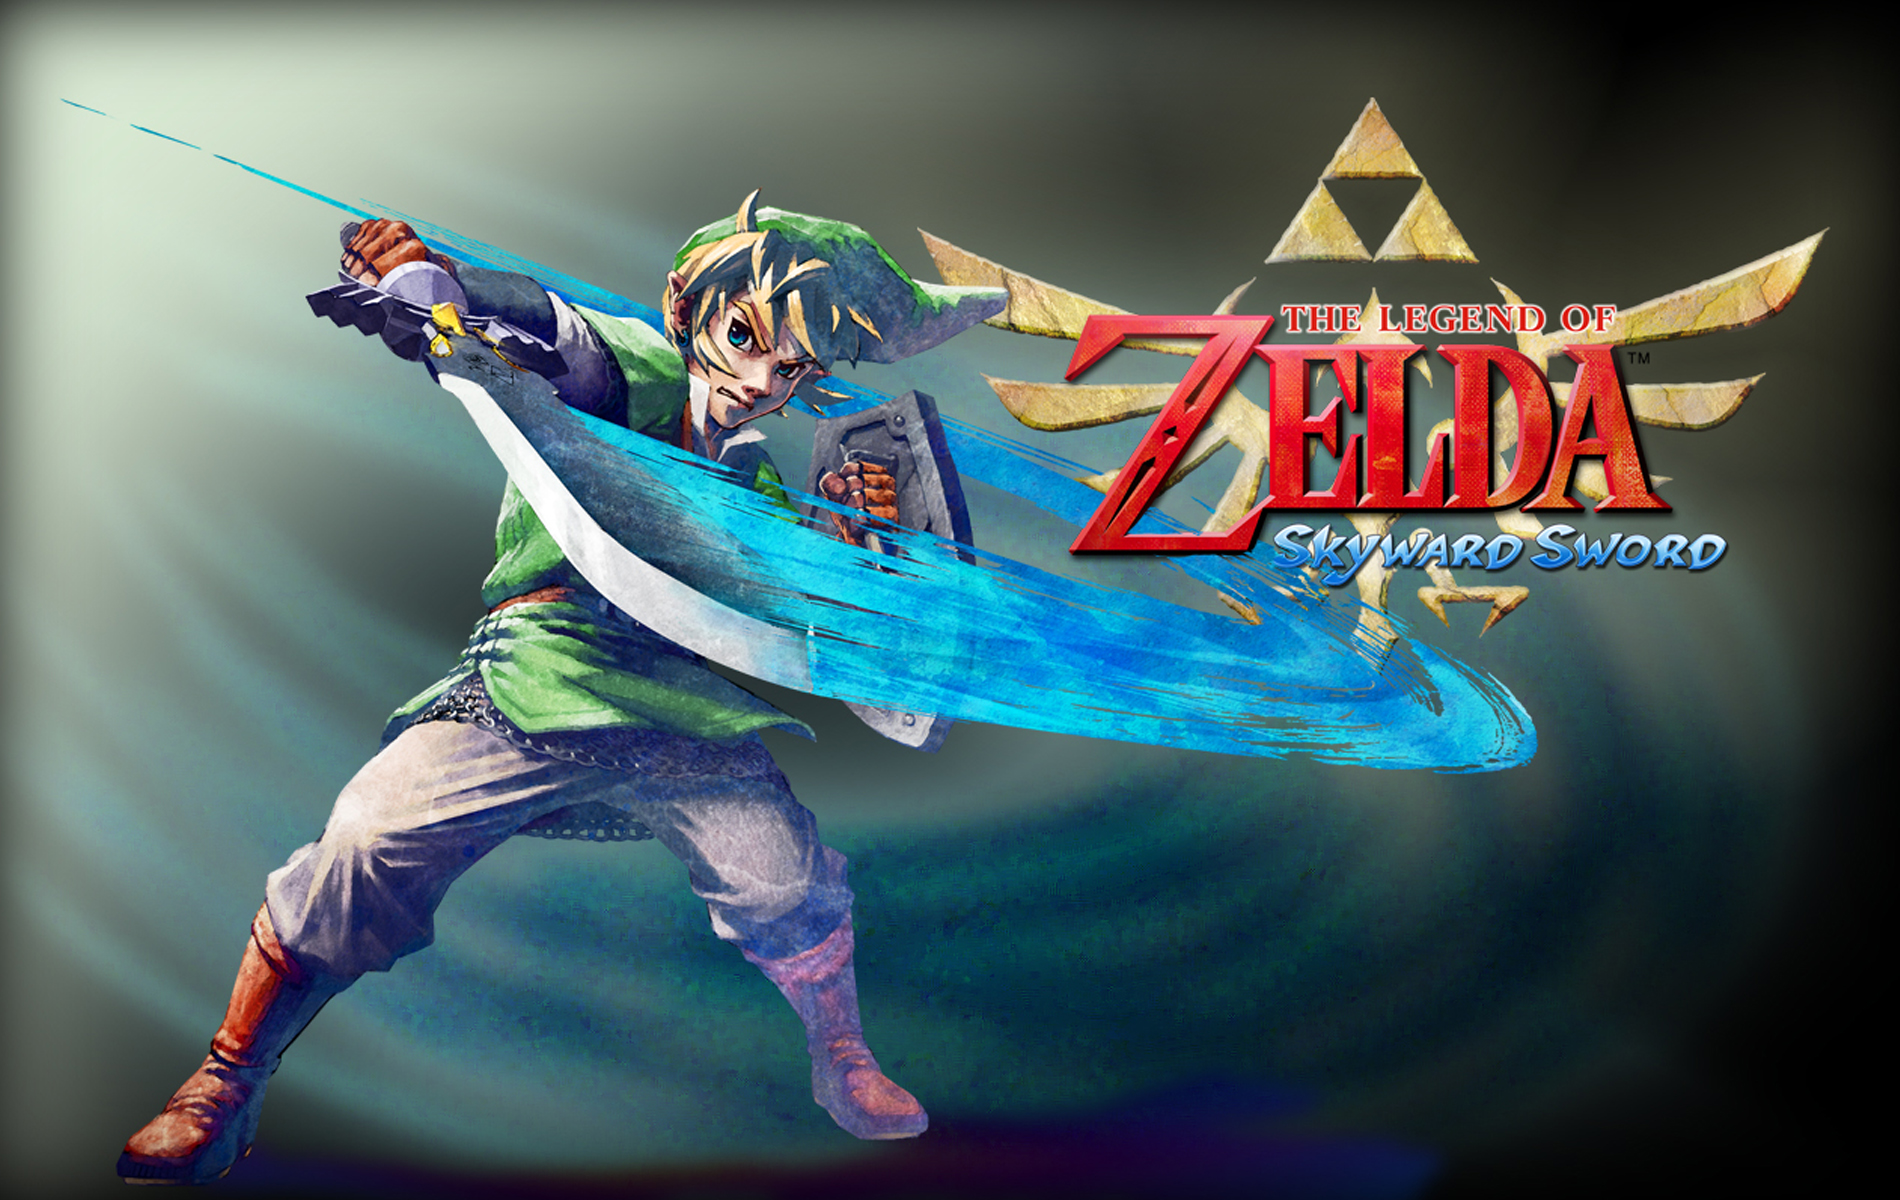 Wallpaper Del Videojuego The Legend Of Zelda Skyward Sword Que Esta A